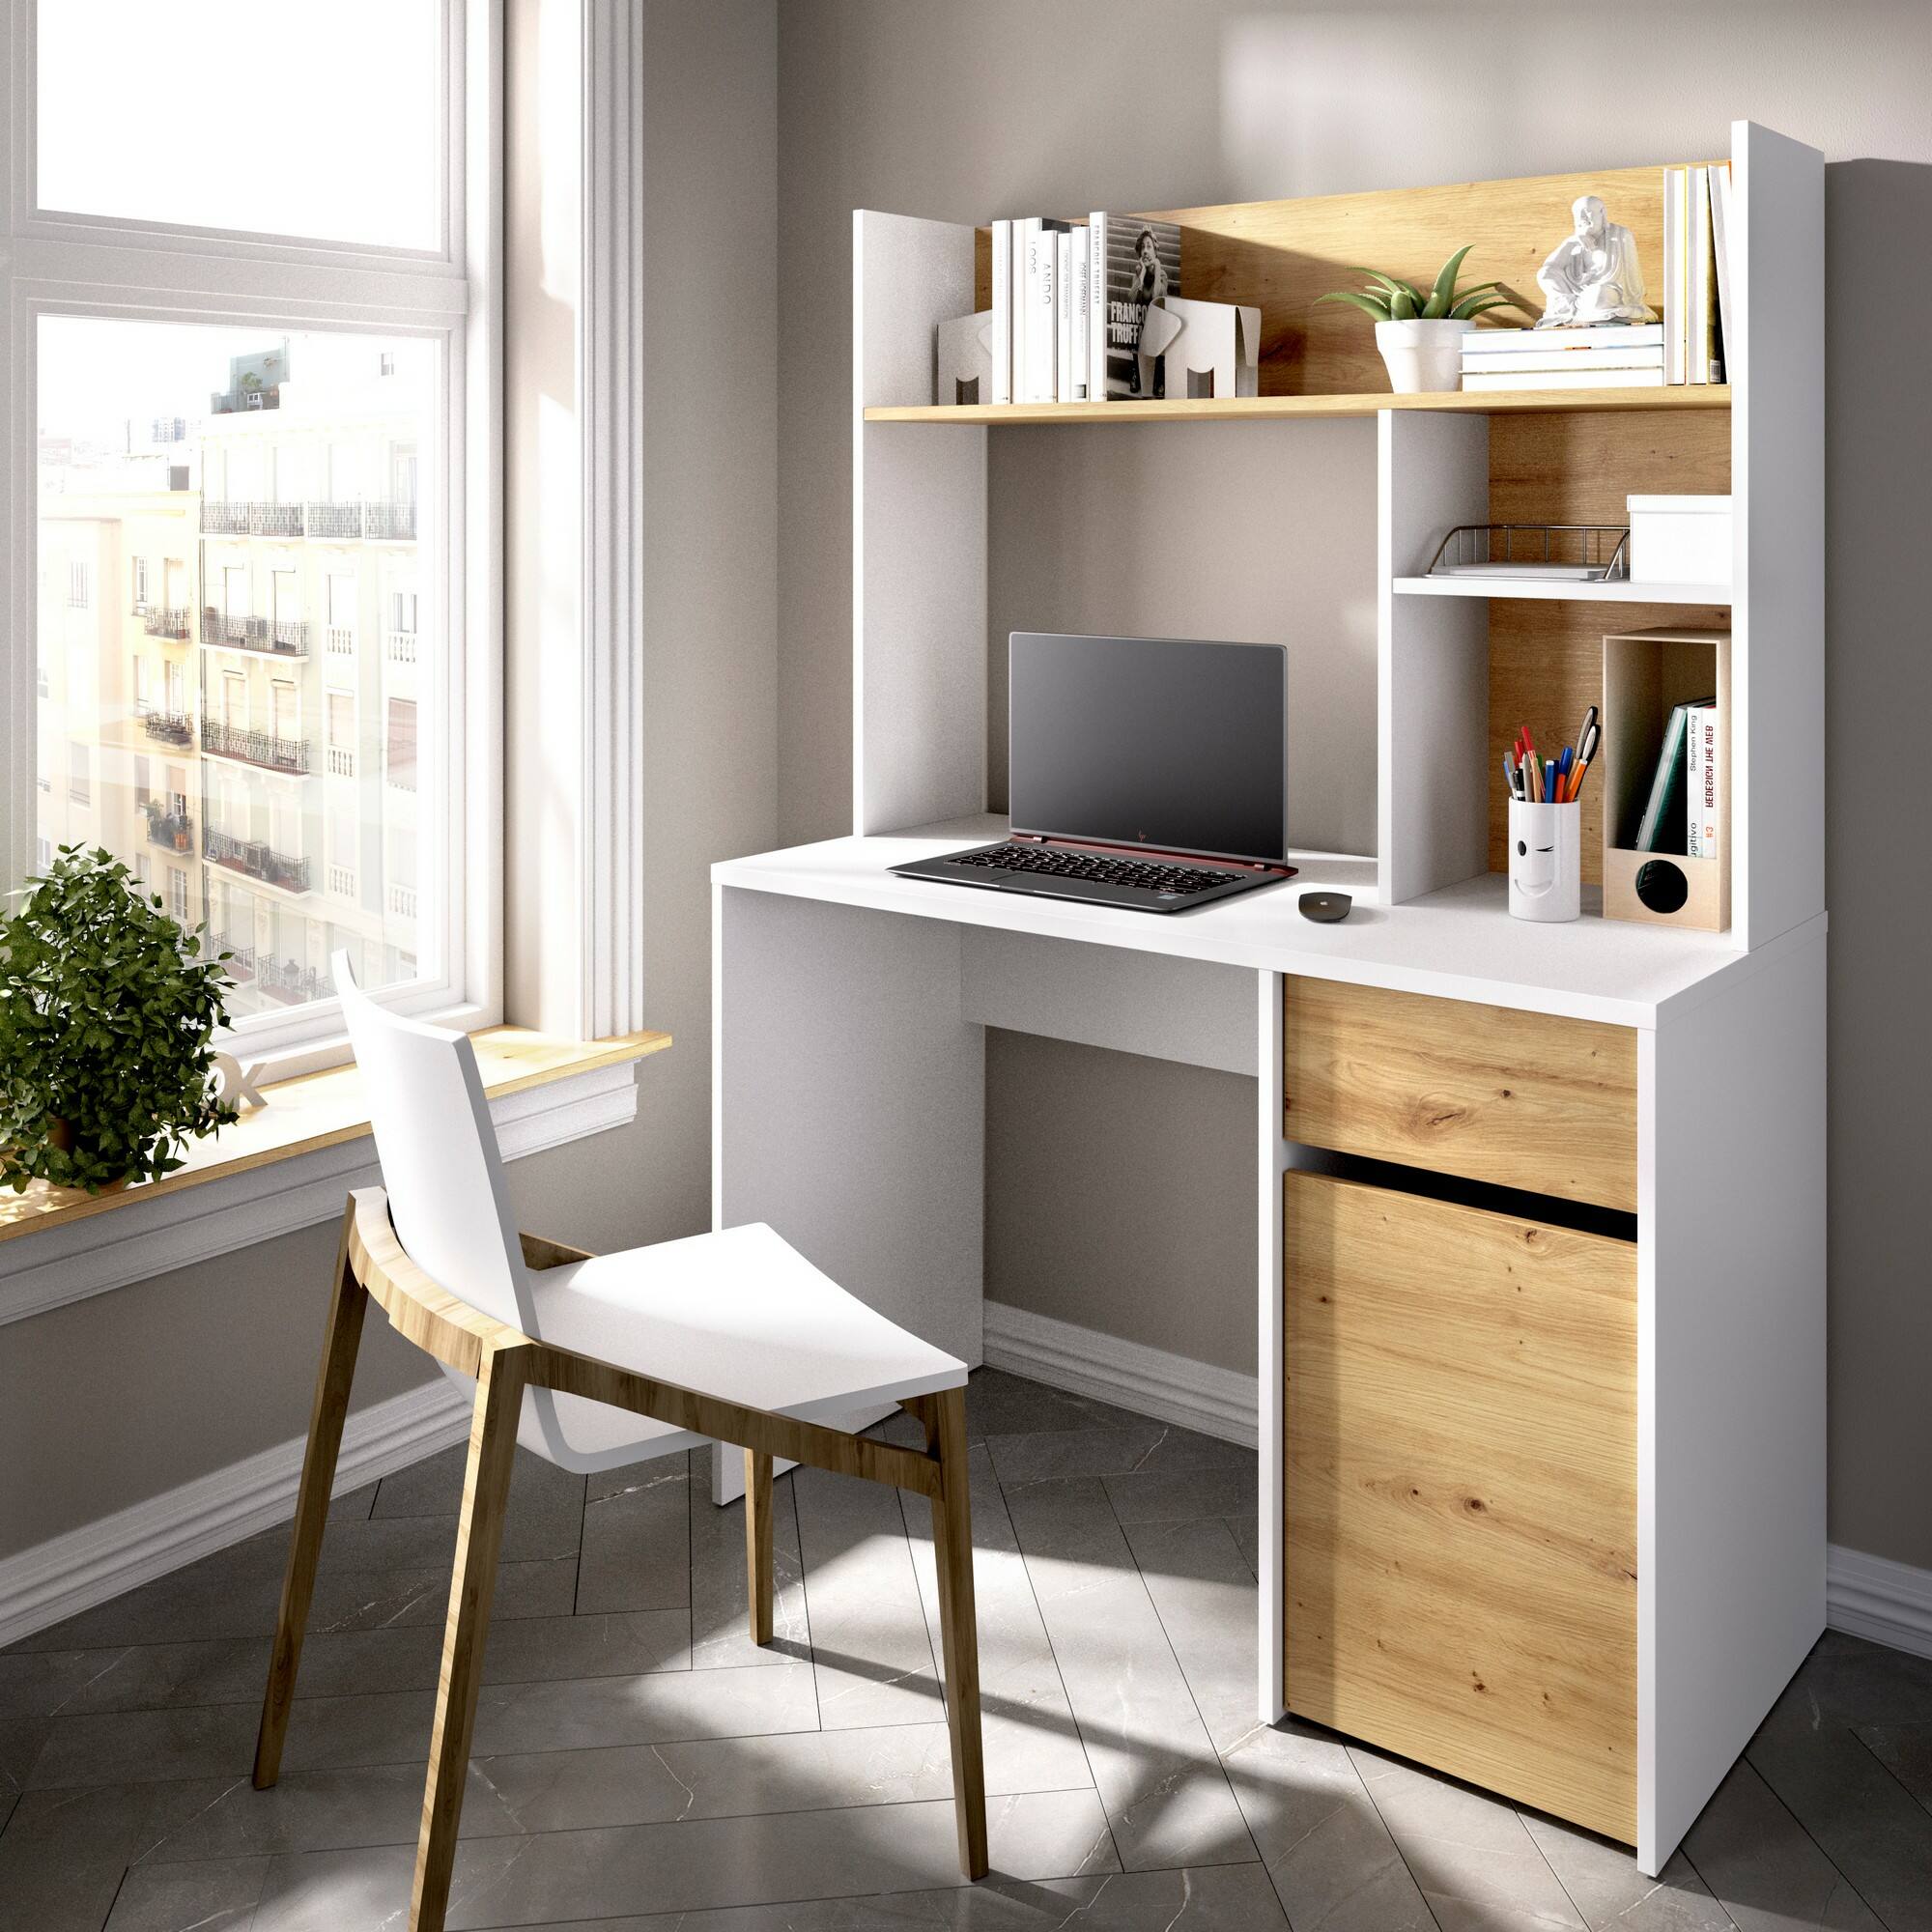 Los escritorios con estanterías son ideales para ahorrar espacio